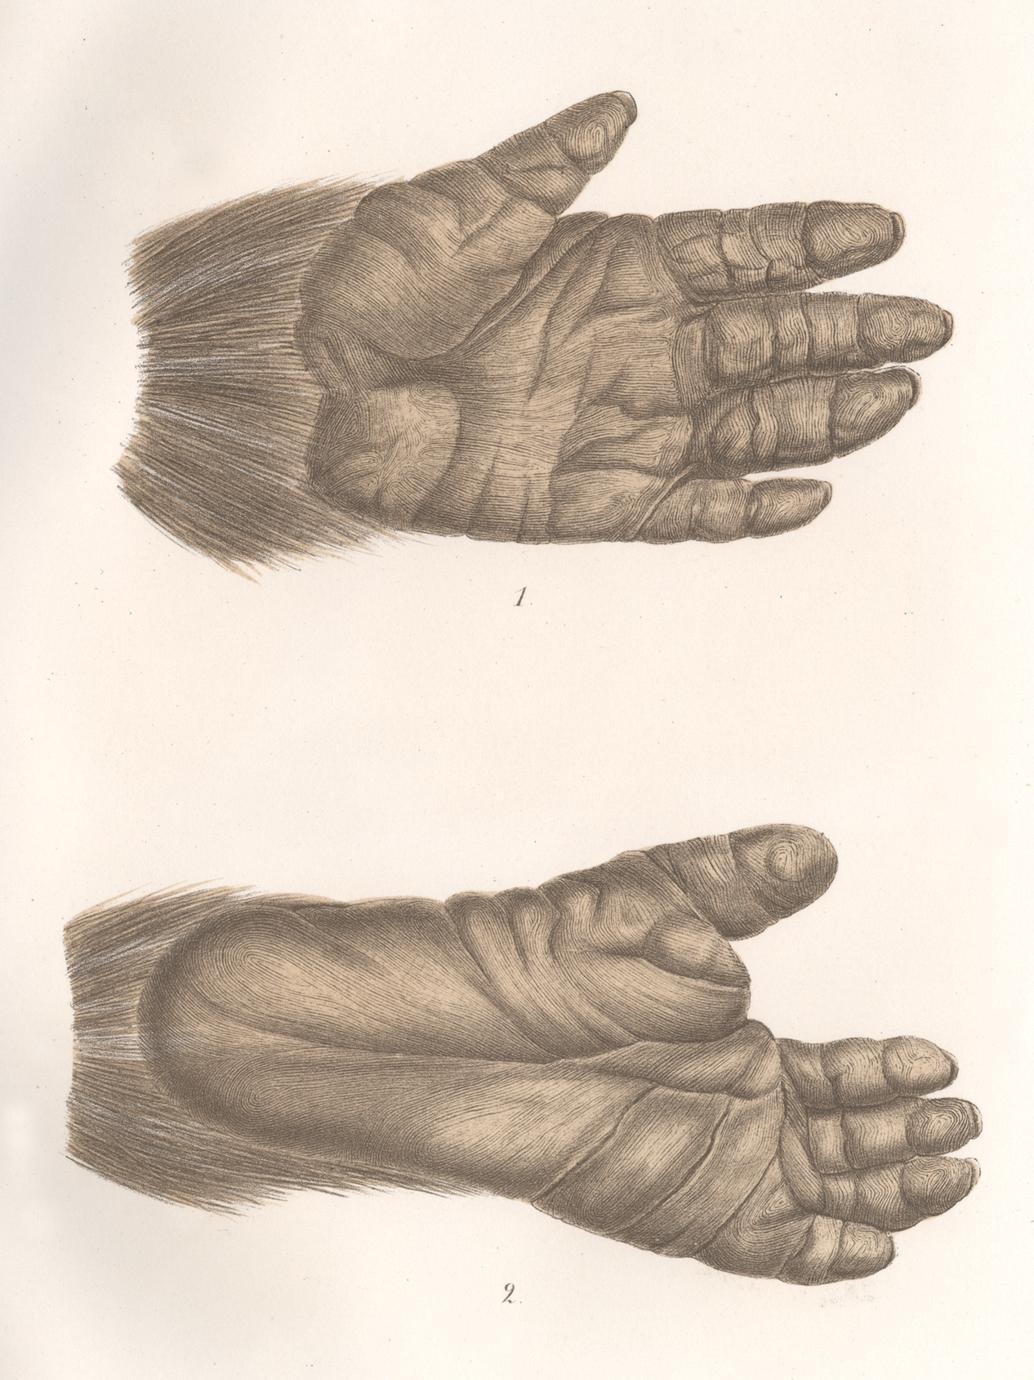 Rendezvous Veranderlijk Potentieel Gorilla Hand and Foot Print - UWDC - UW-Madison Libraries